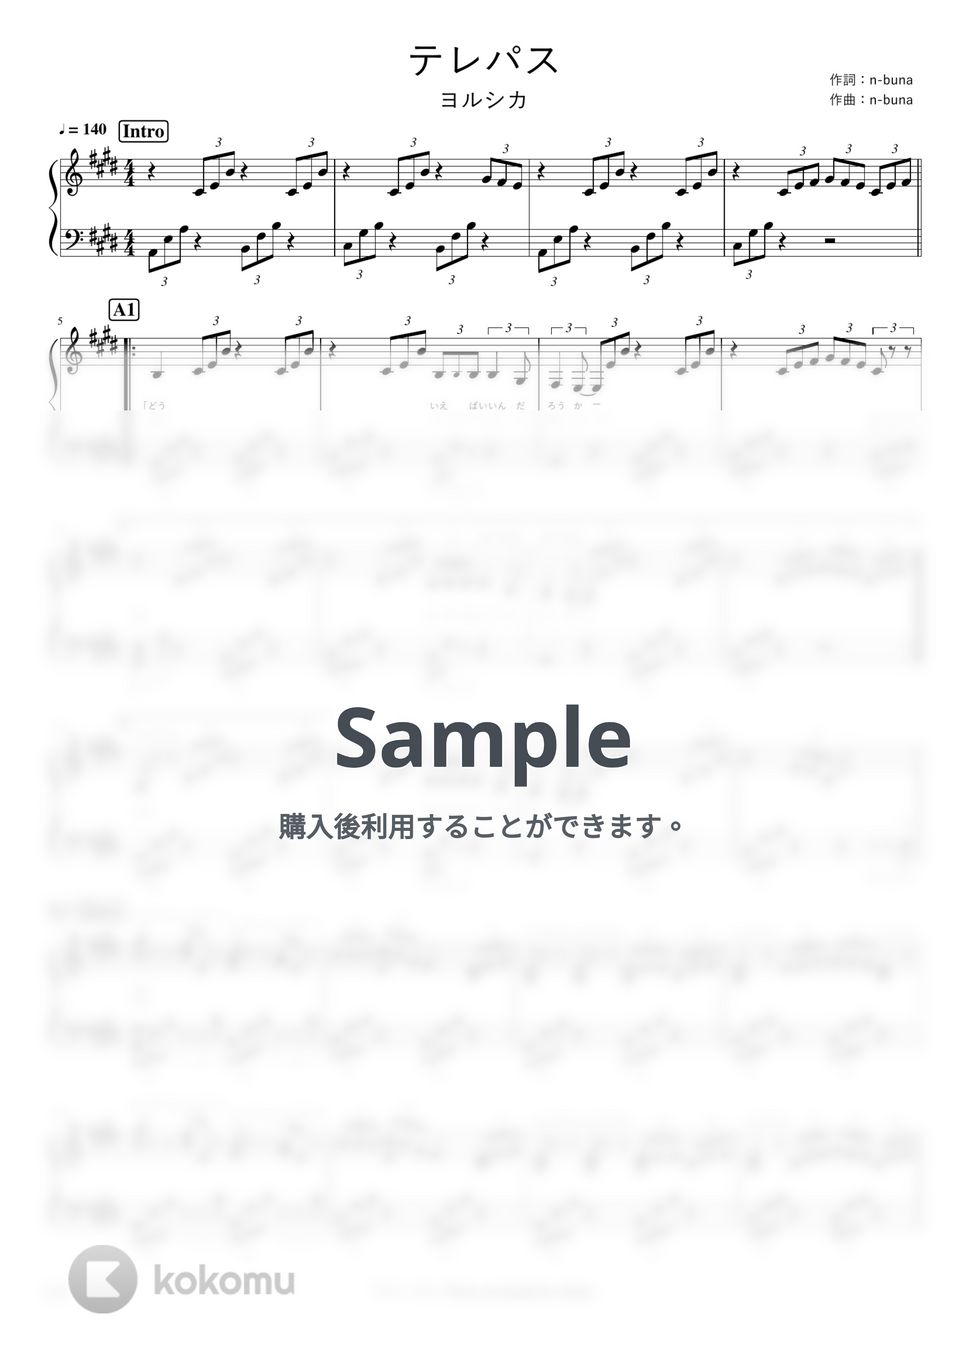 ヨルシカ - テレパス by pianomikan